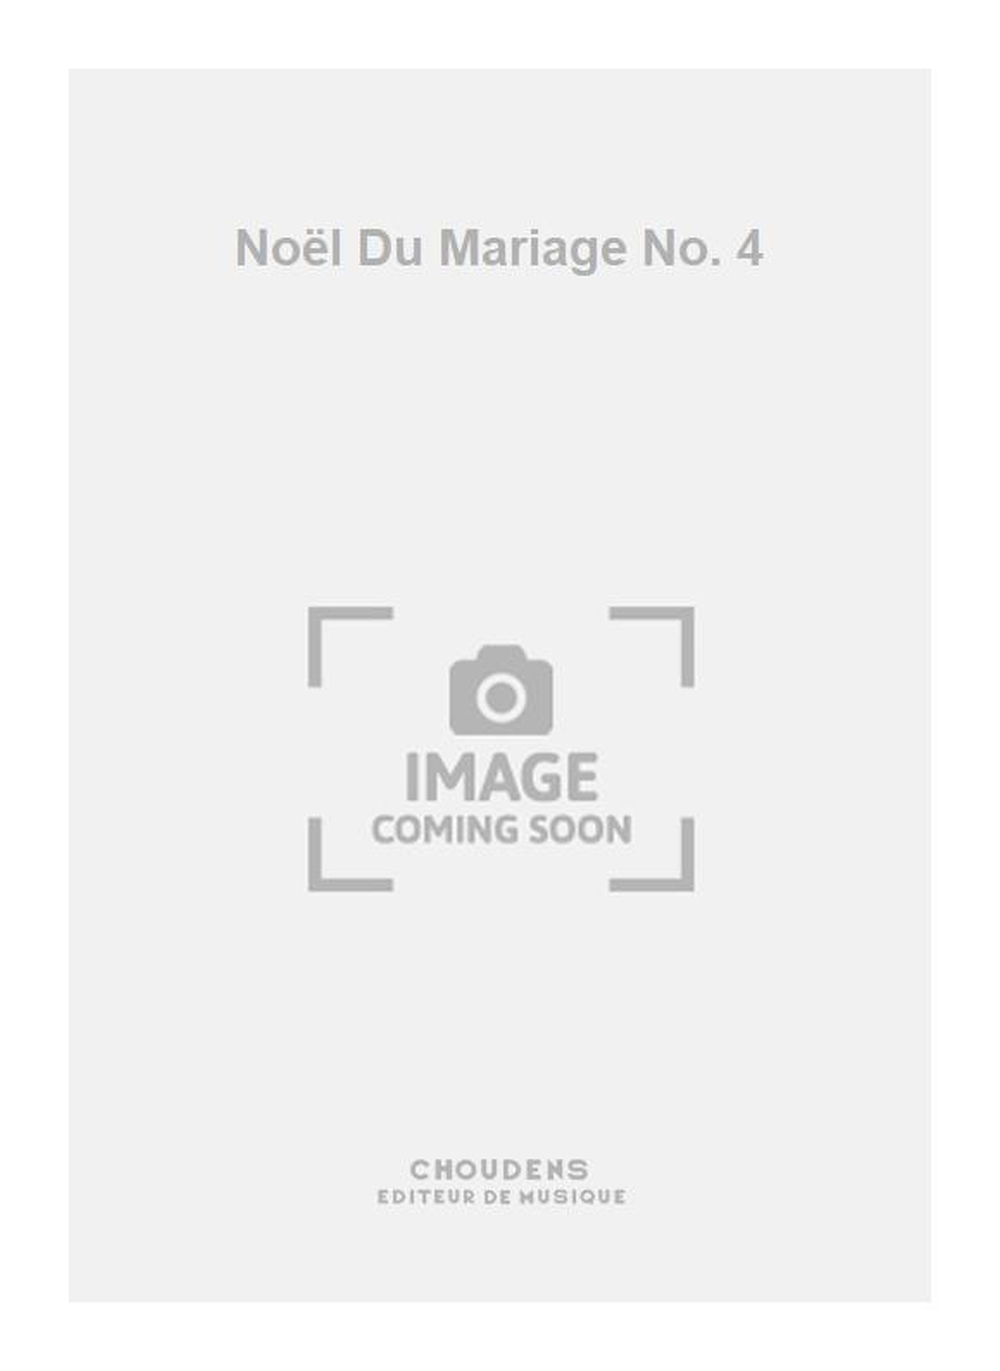 Nol Du Mariage No. 4